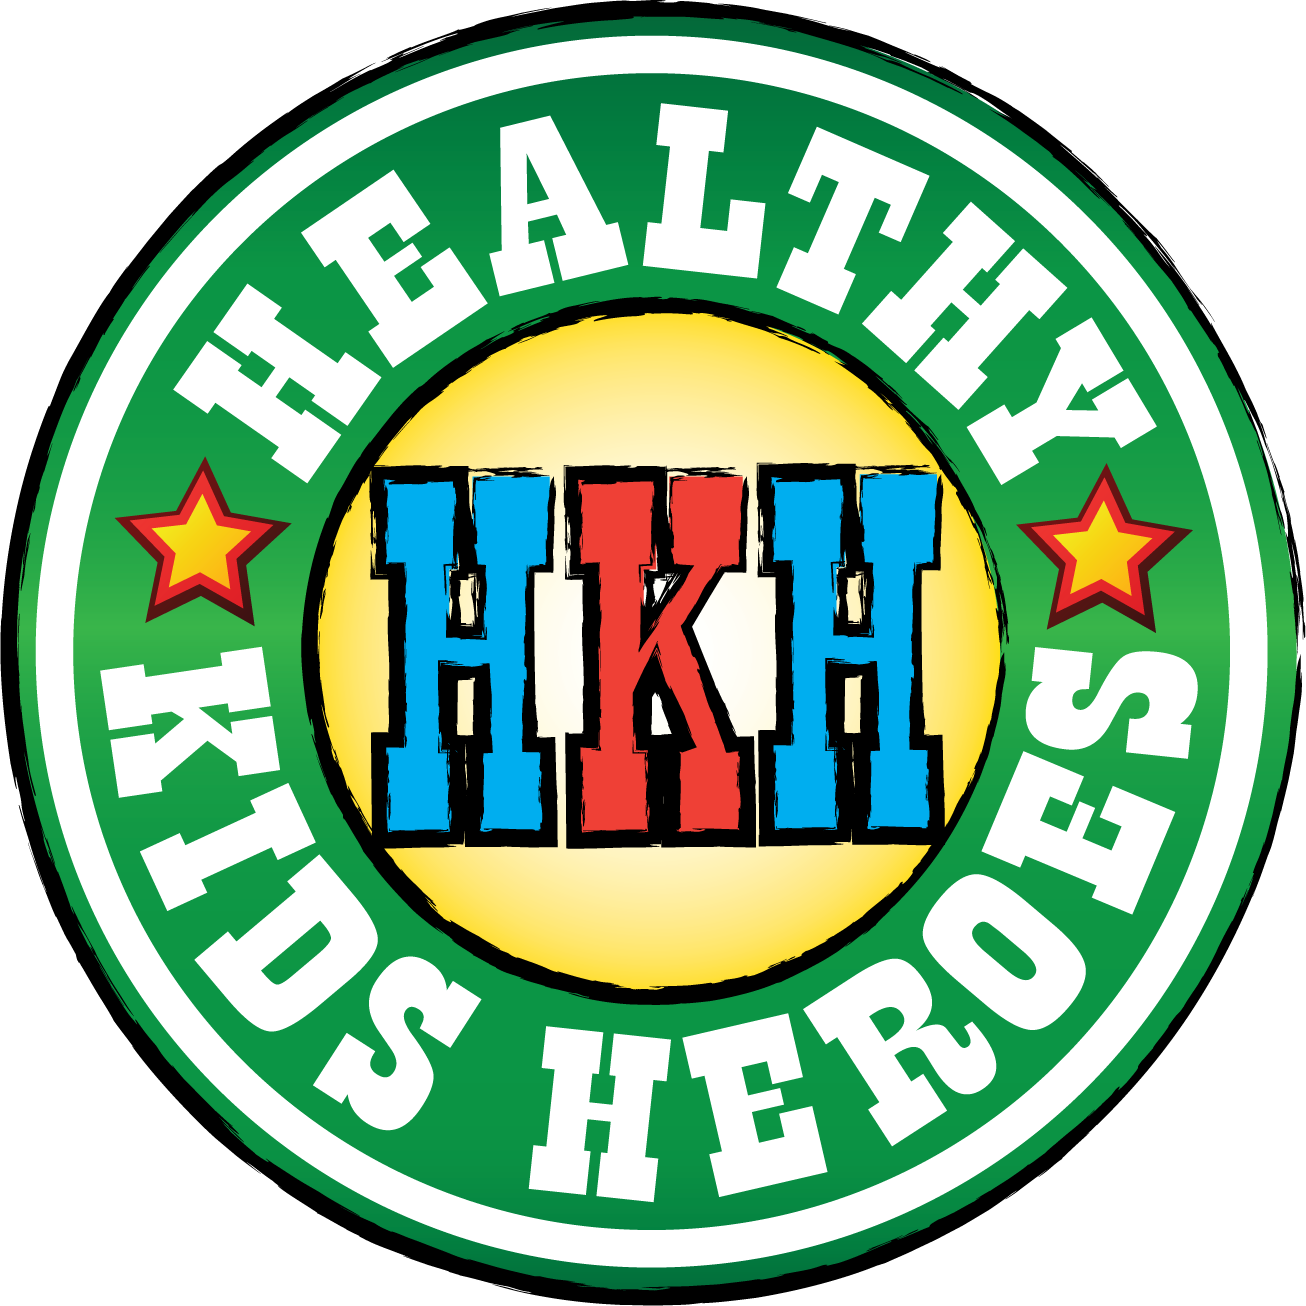 Healthy Kids Heroes